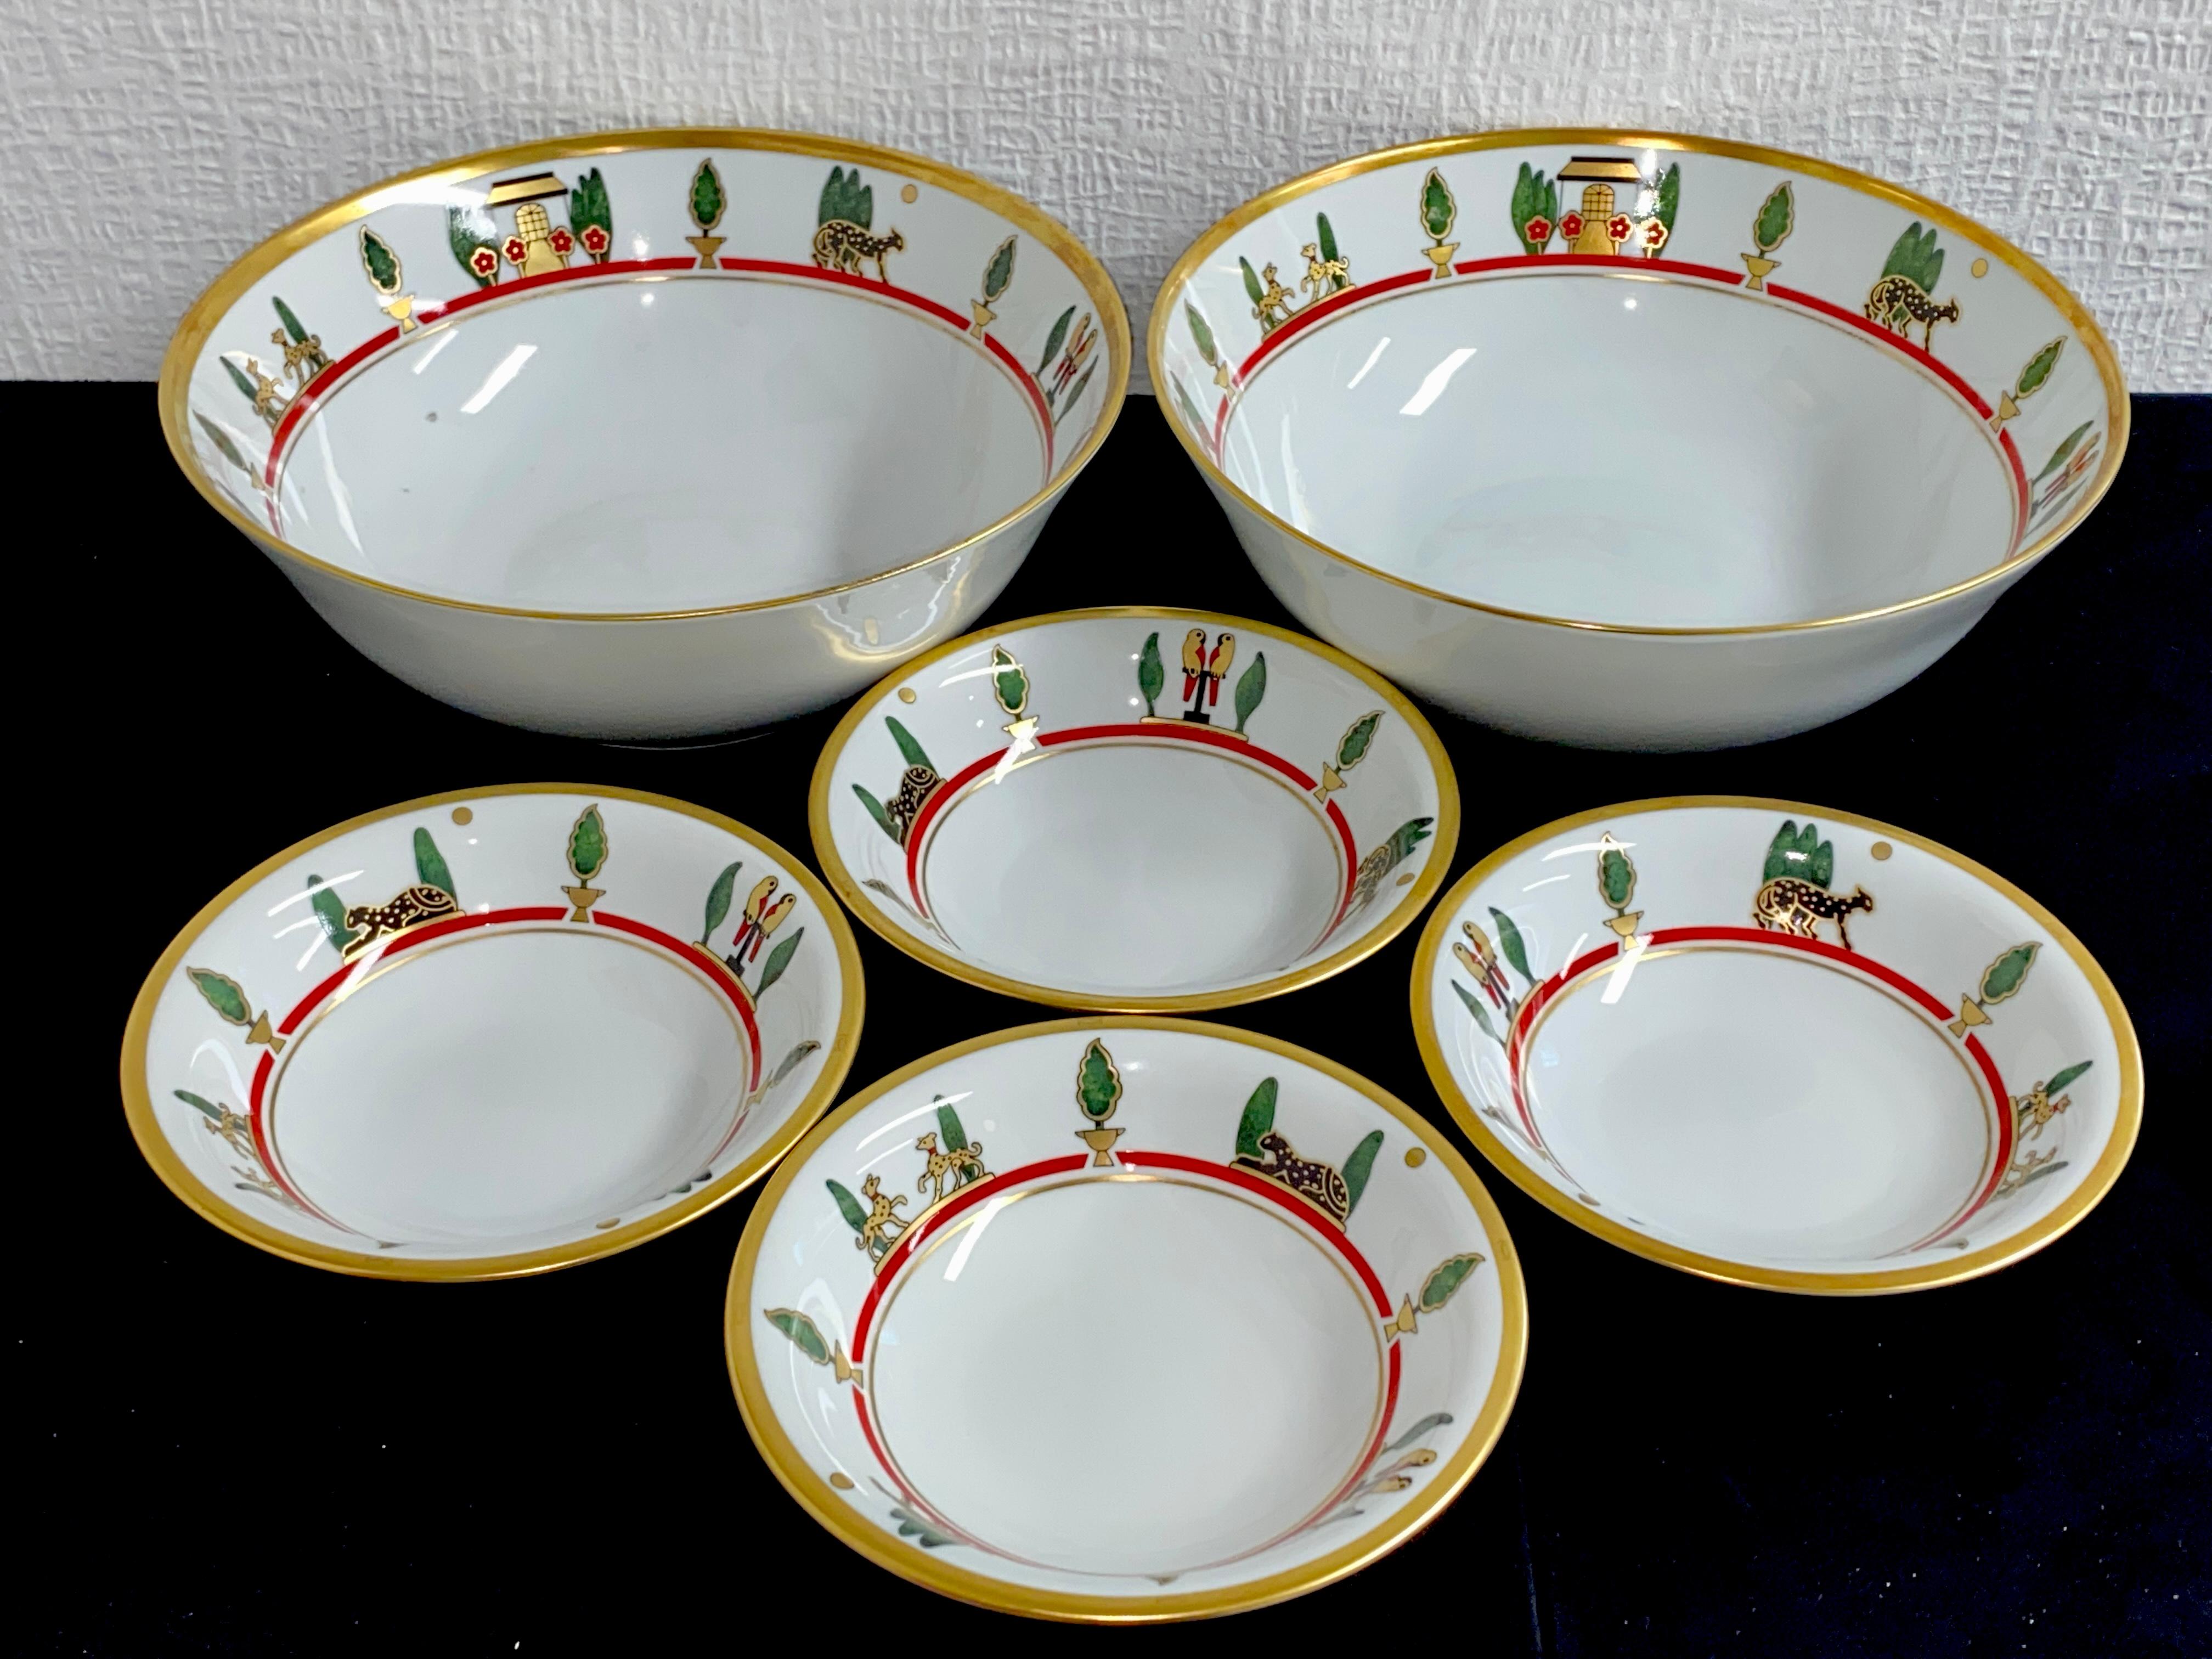 Porcelain Dinnerware, Tableware by Limoges and La Maison de Louis Cartier 1